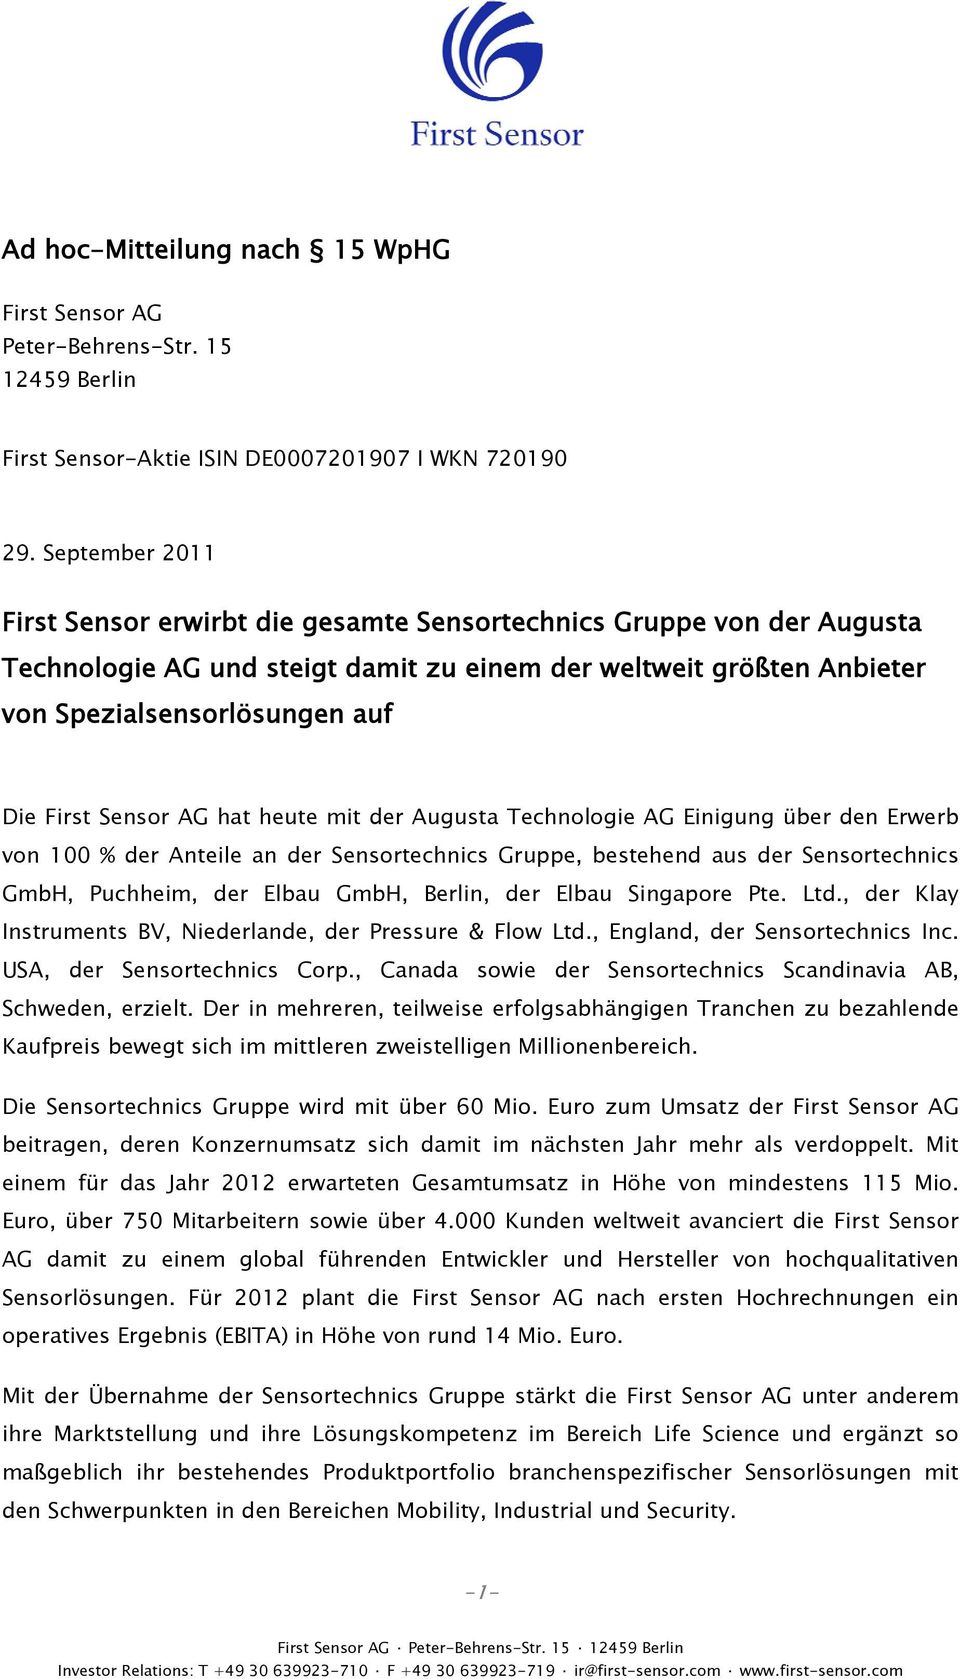 heute mit der Augusta Technologie AG Einigung über den Erwerb von 100 % der Anteile an der Sensortechnics Gruppe, bestehend aus der Sensortechnics GmbH, Puchheim, der Elbau GmbH, Berlin, der Elbau